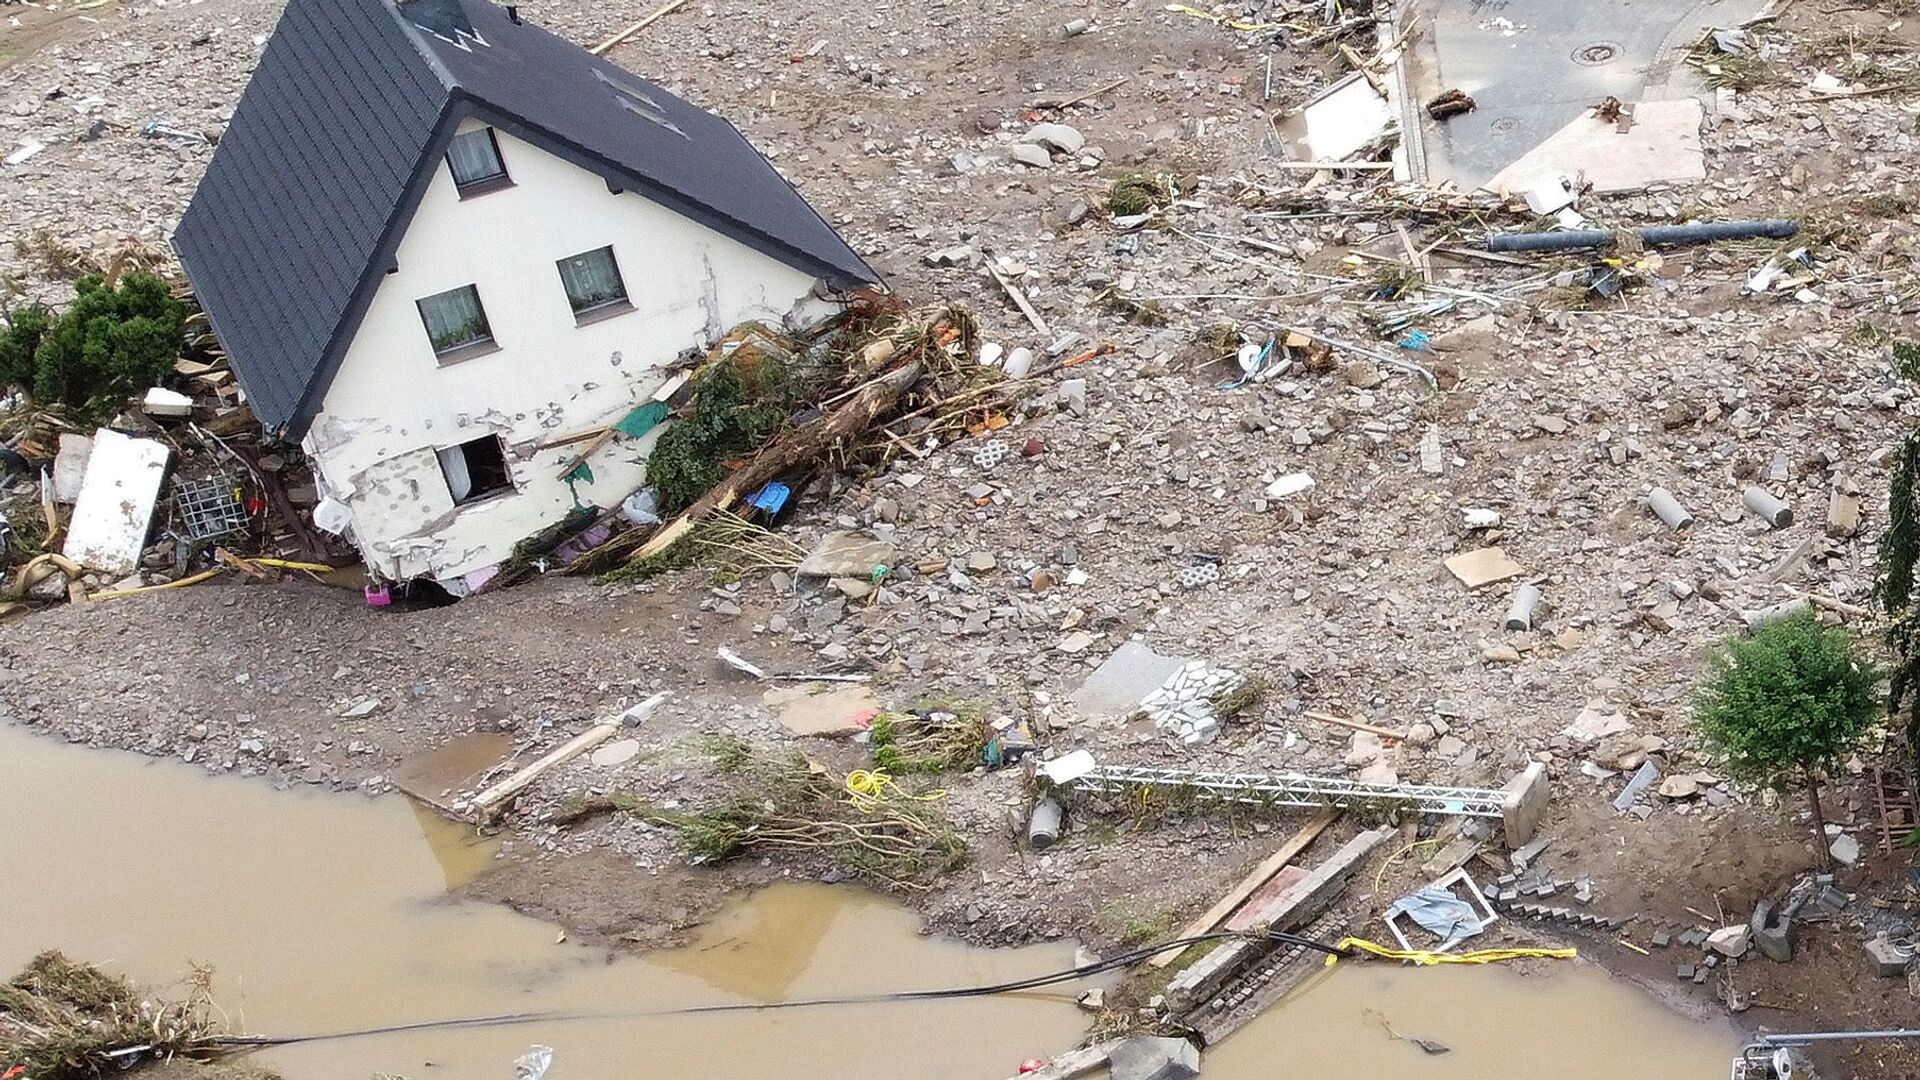 Общий вид зоны, пострадавшей от наводнения после проливных дождей в Шульде, Германия  - Sputnik Таджикистан, 1920, 30.07.2021